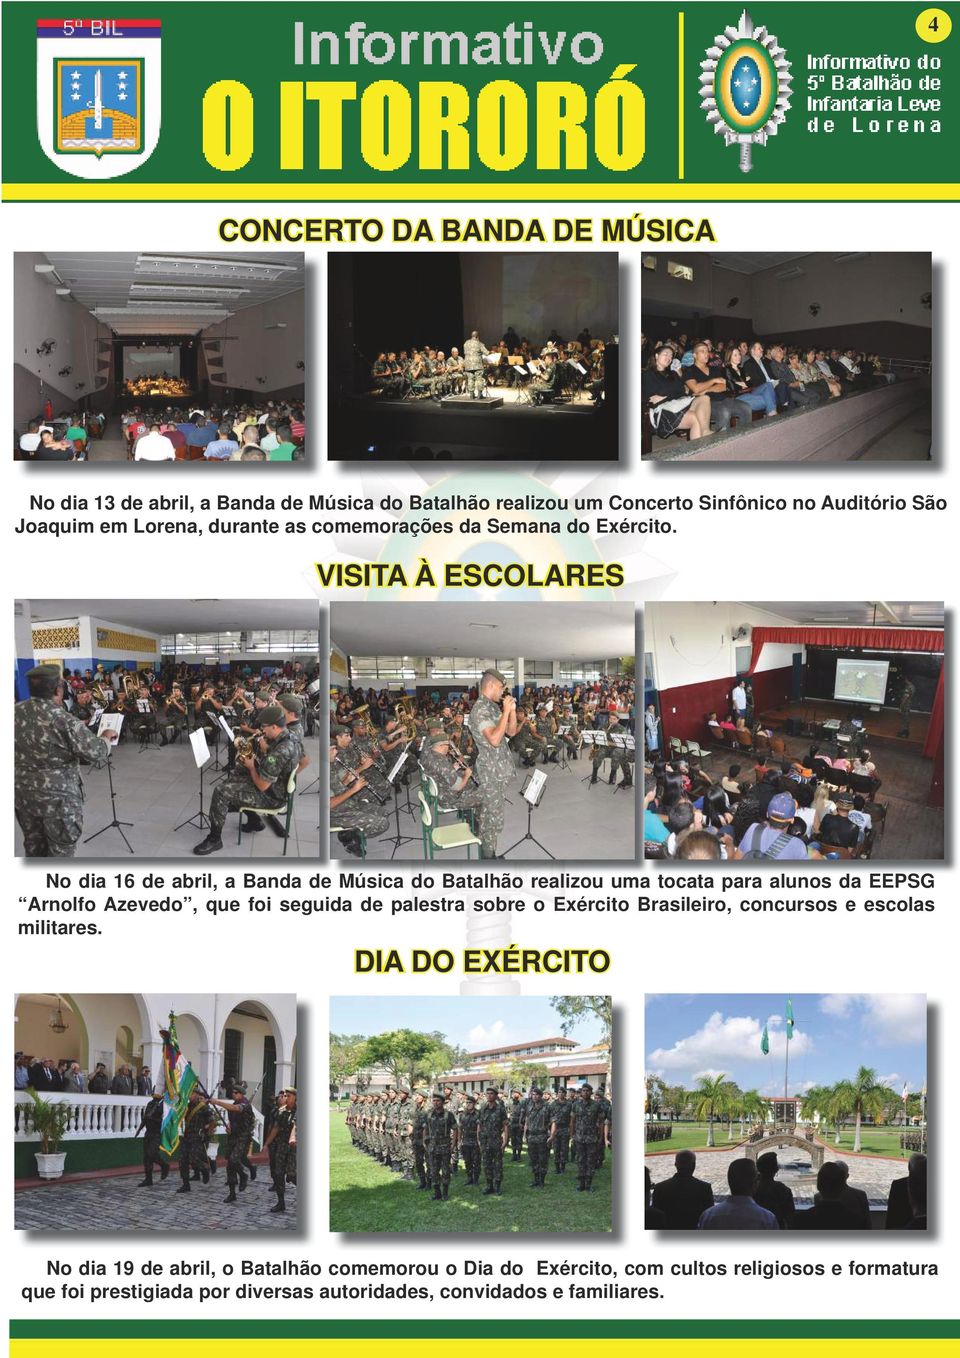 VISITA À ESCOLARES No dia 16 de abril, a Banda de Música do Batalhão realizou uma tocata para alunos da EEPSG Arnolfo Azevedo, que foi seguida de